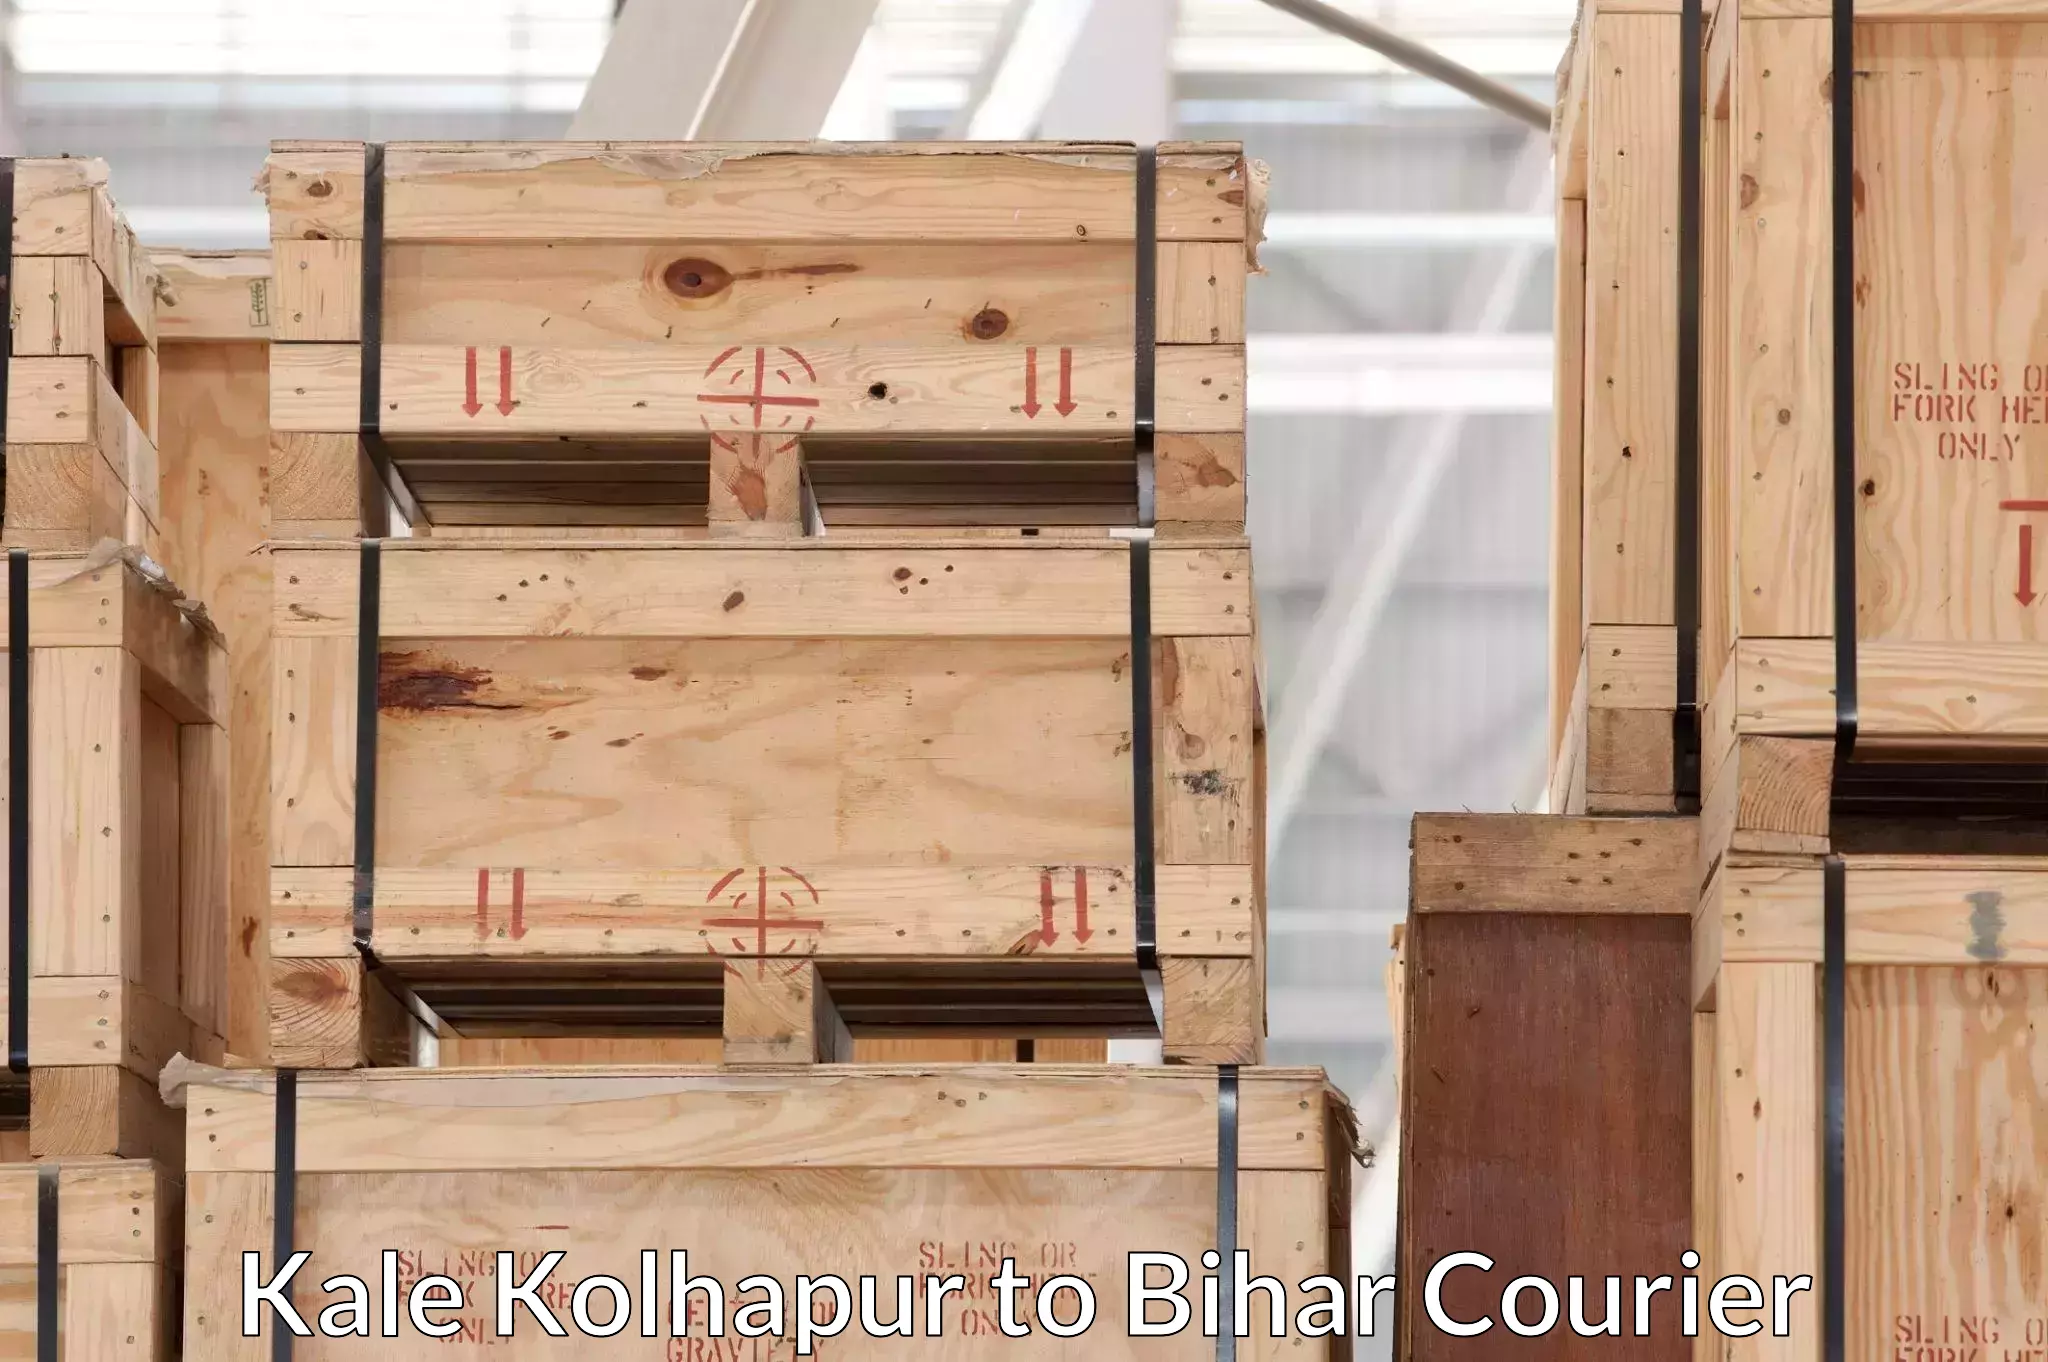 Furniture transport professionals Kale Kolhapur to Bharwara